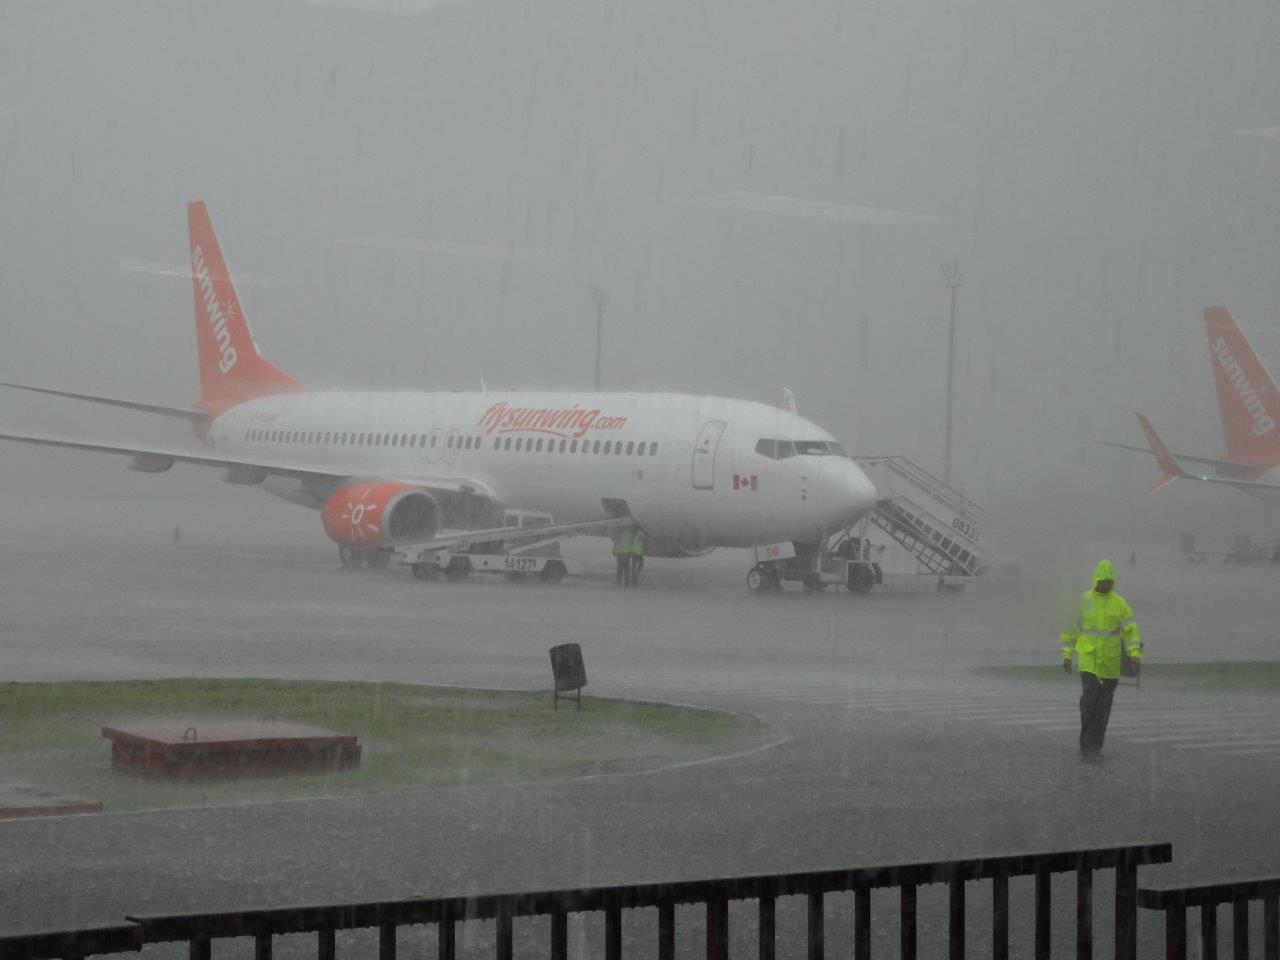 Irma band of torrential rain at Havana airport